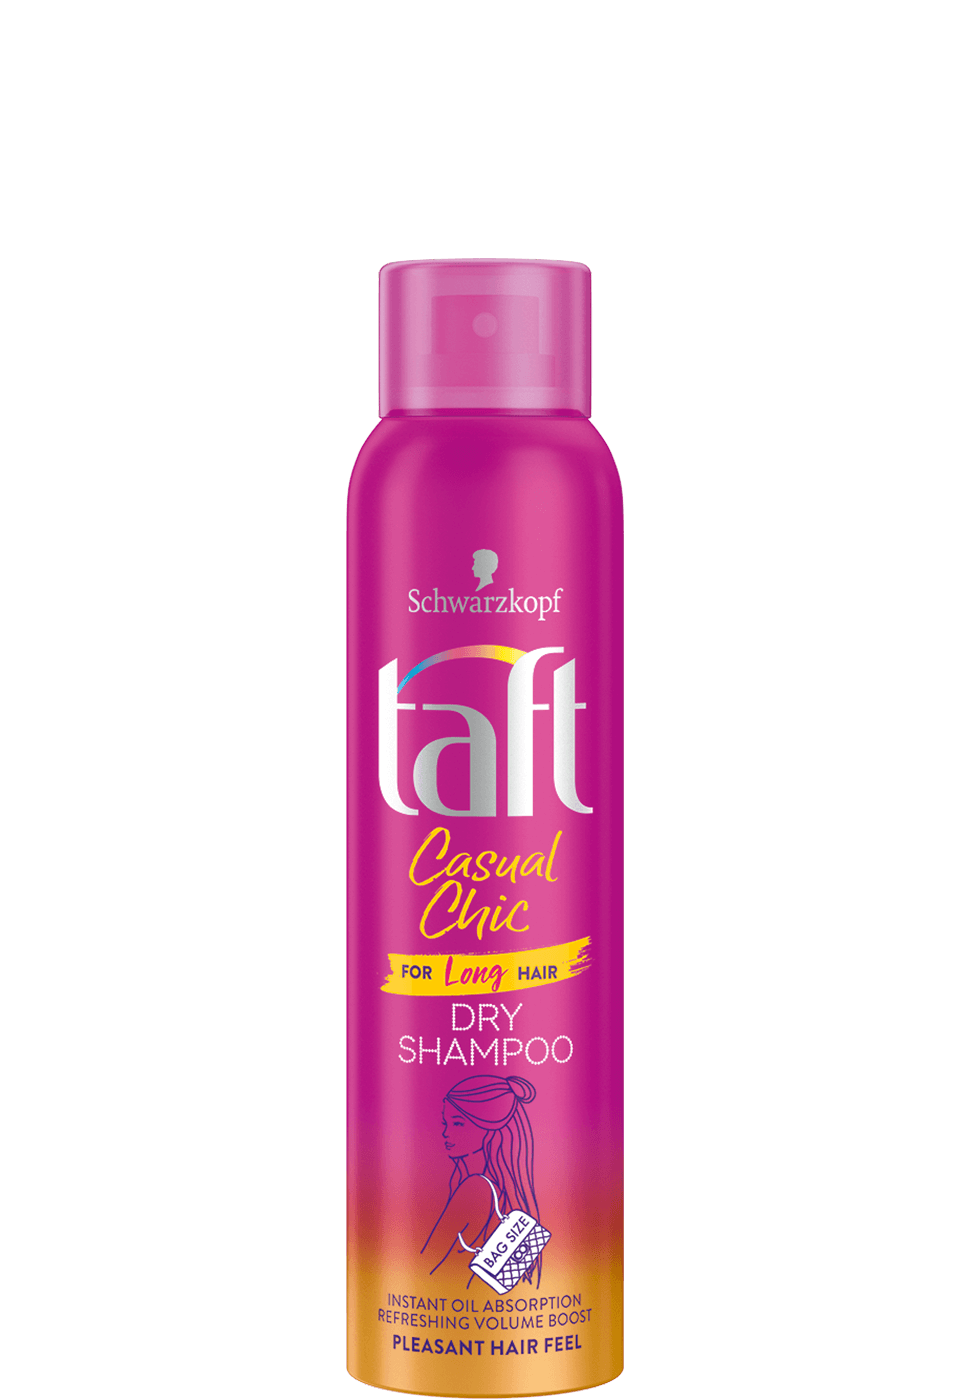 Средство для длинных волос. Taft сухой шампунь. Taft сухой шампунь мусс. Taft сухой шампунь Casual Chic, 150 мл. Воздушный мусс для волос Taft.